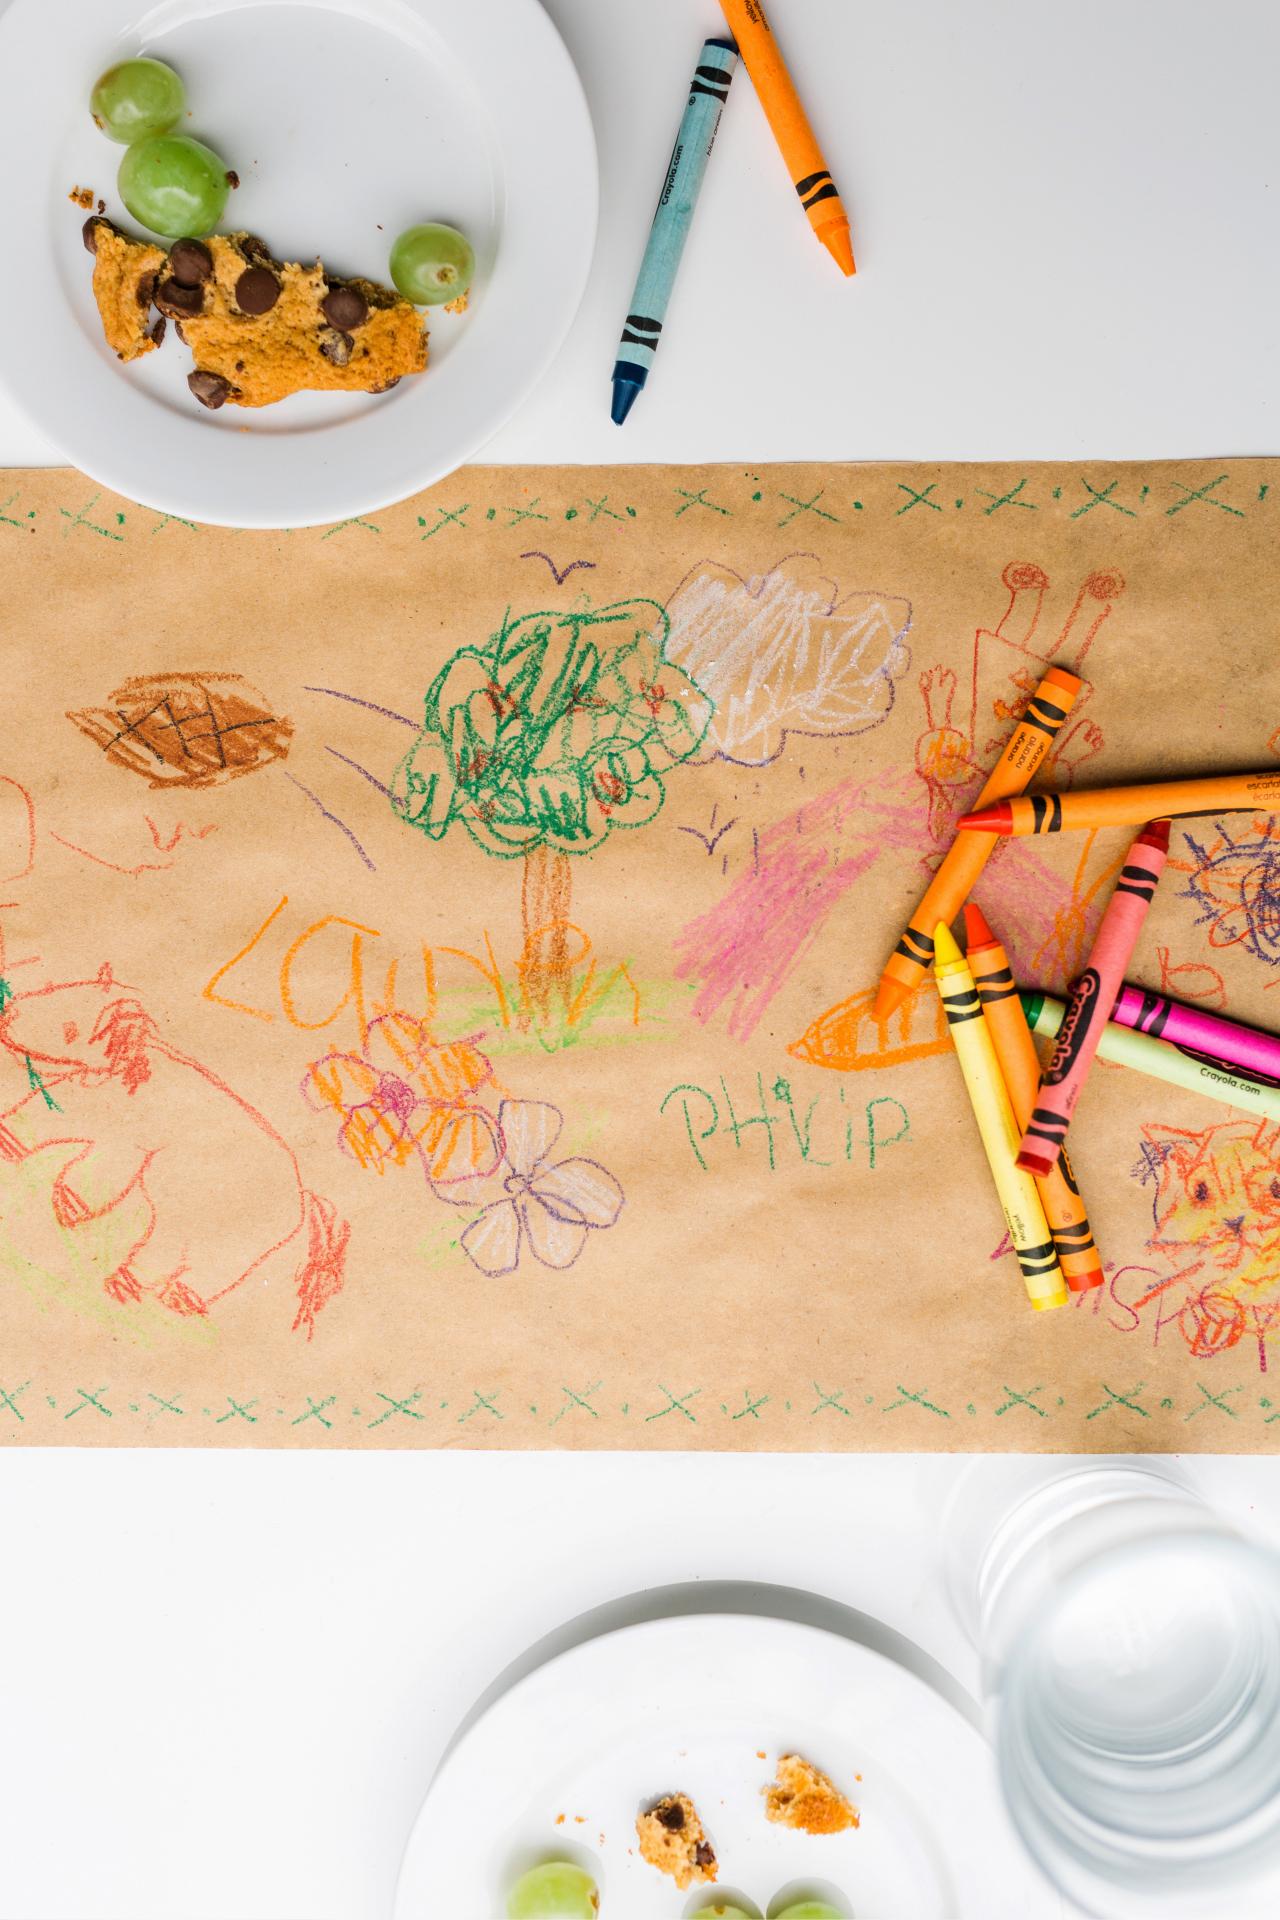 kids crayon table